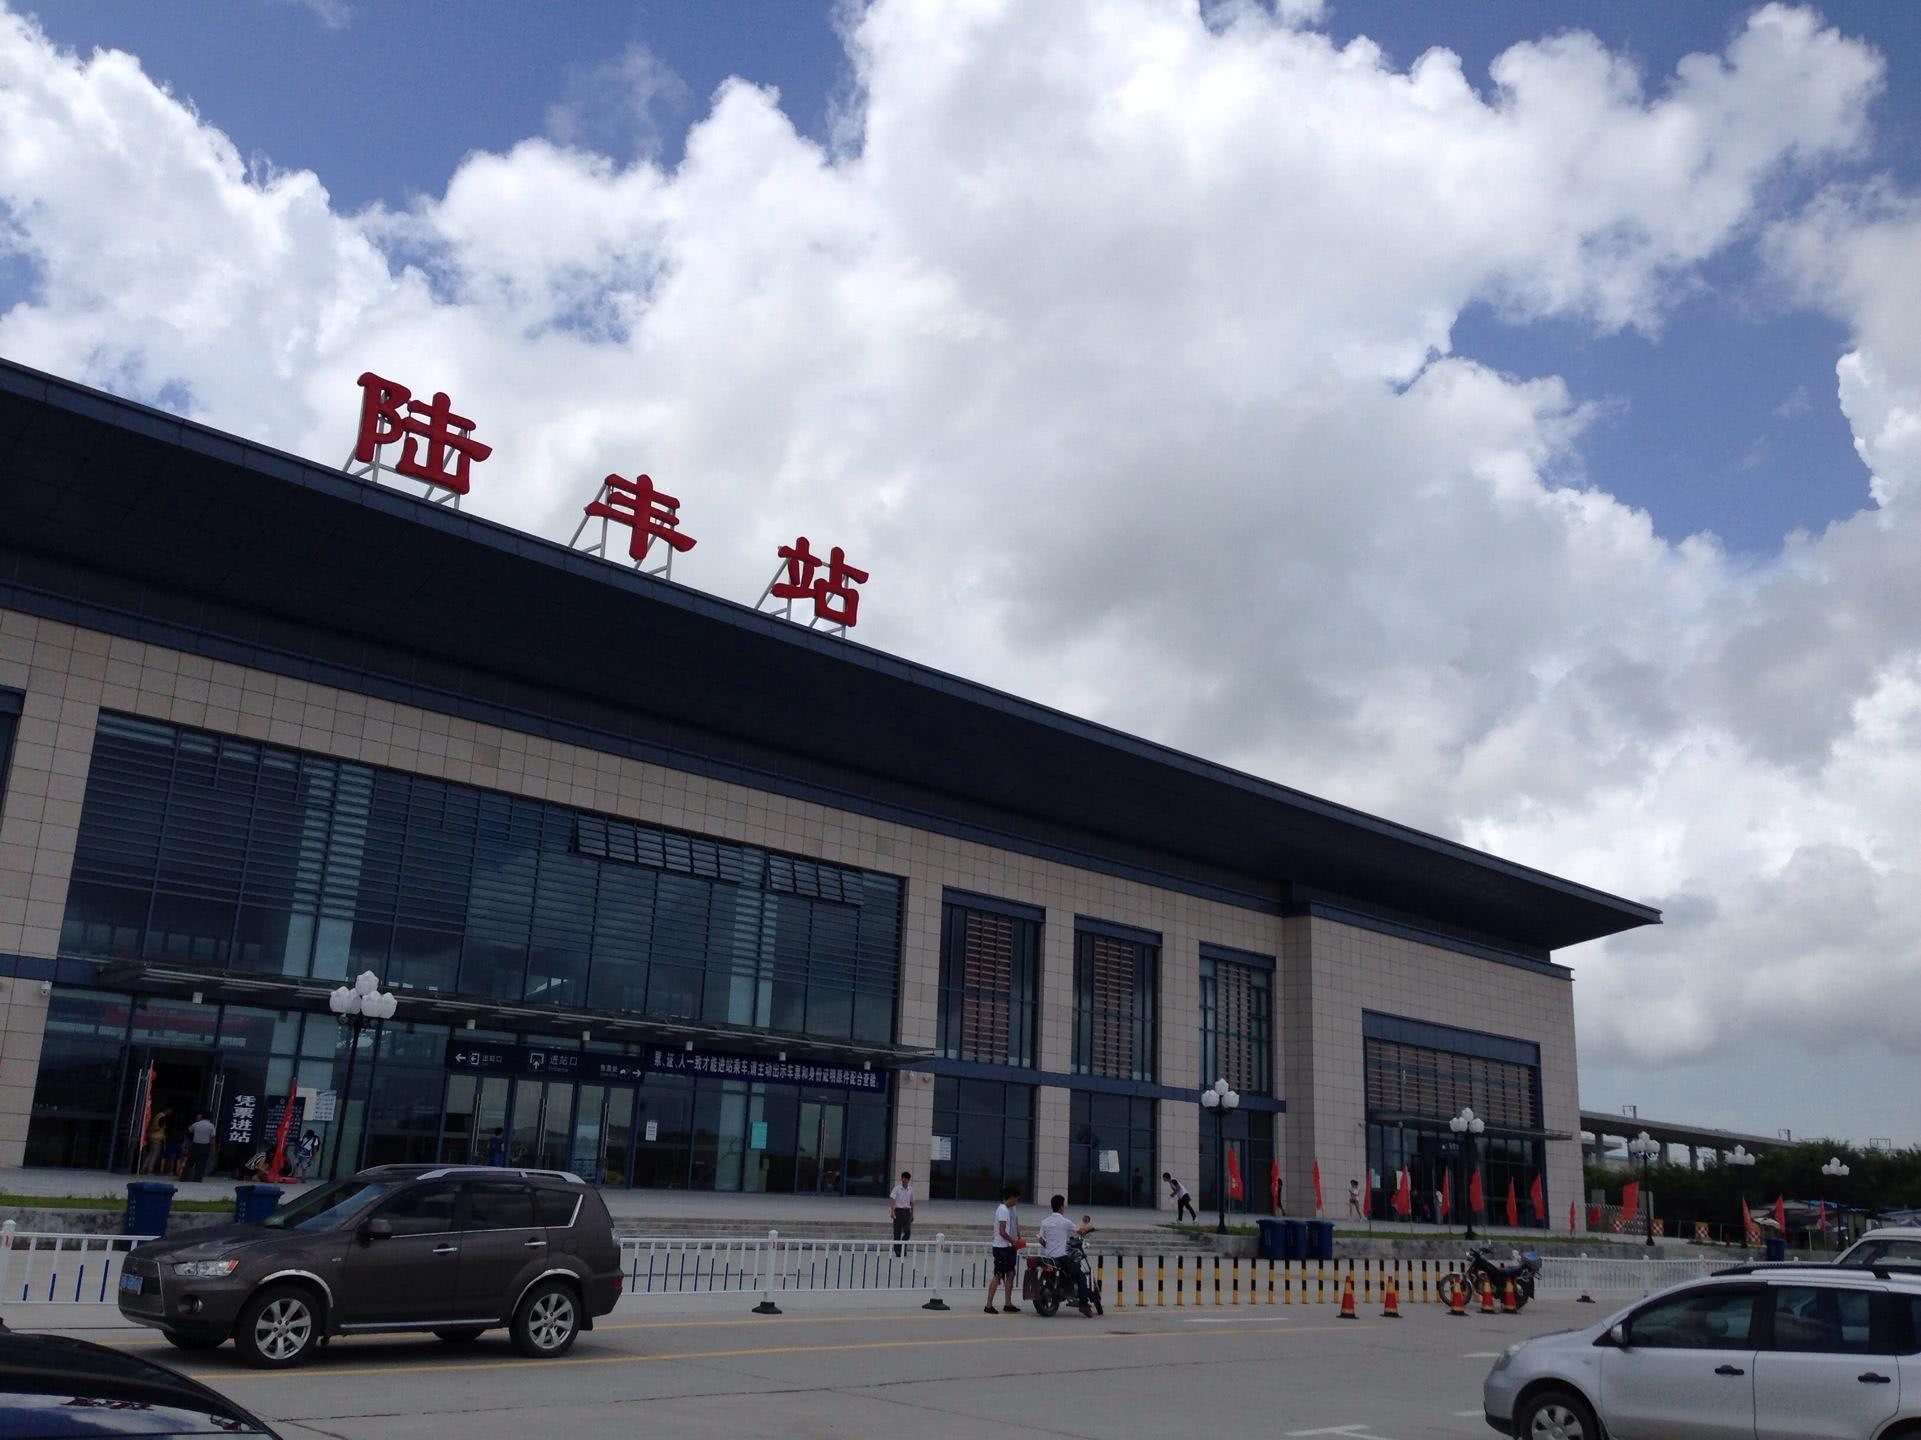 陆丰站陆丰站为厦深铁路中间站,是陆丰市重要的交通枢纽,陆丰站位于